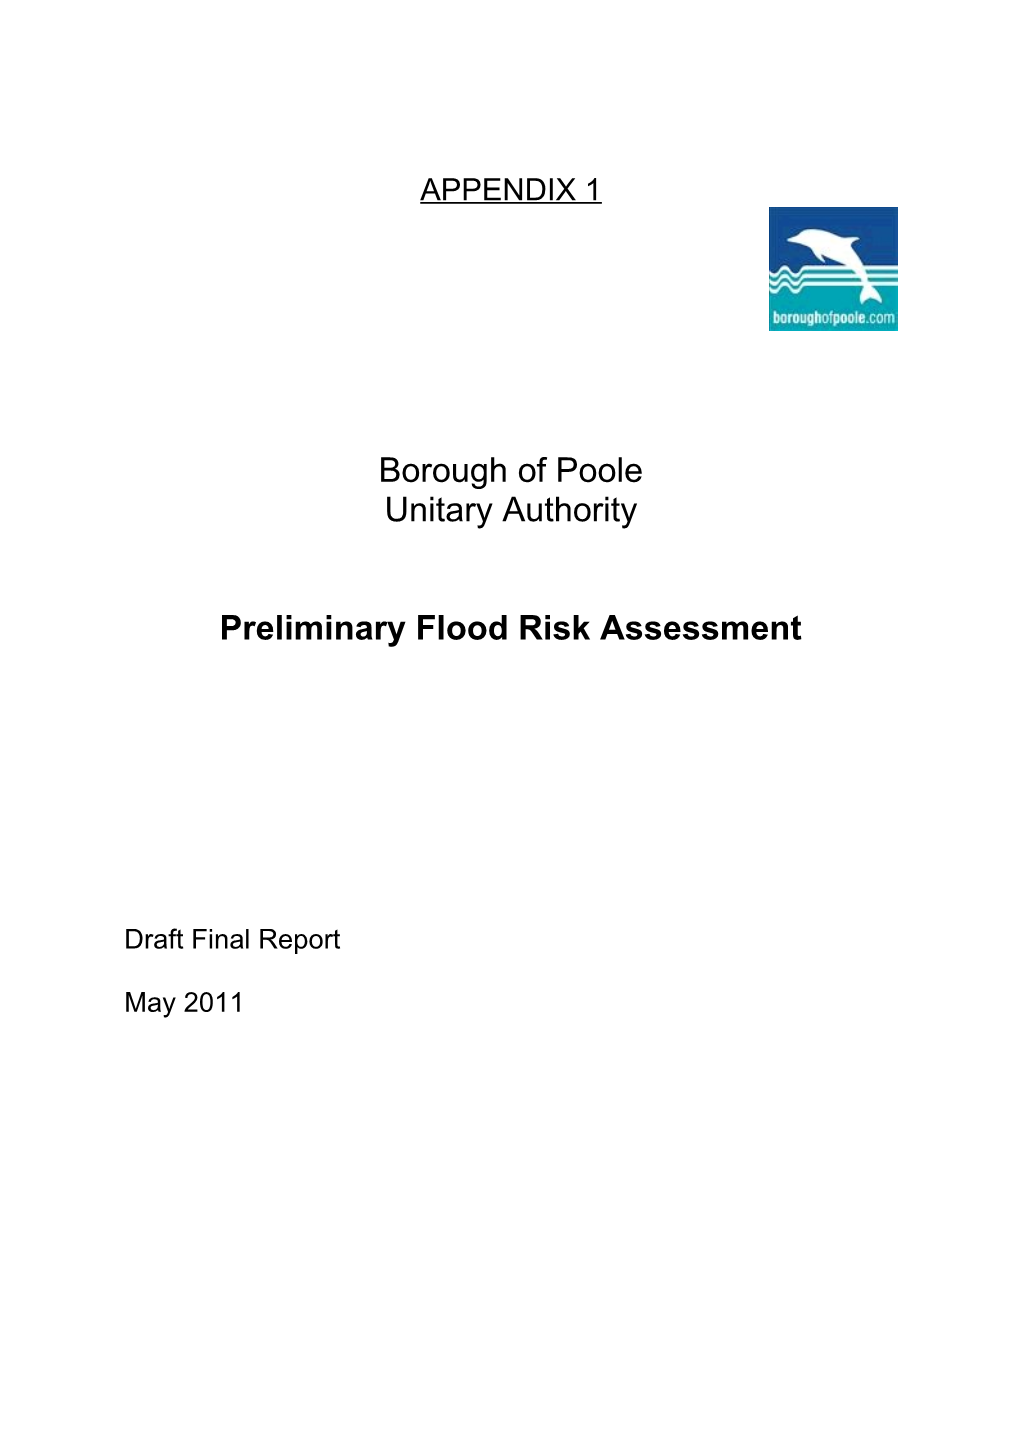 Preliminary Flood Risk Assessment - Appendix